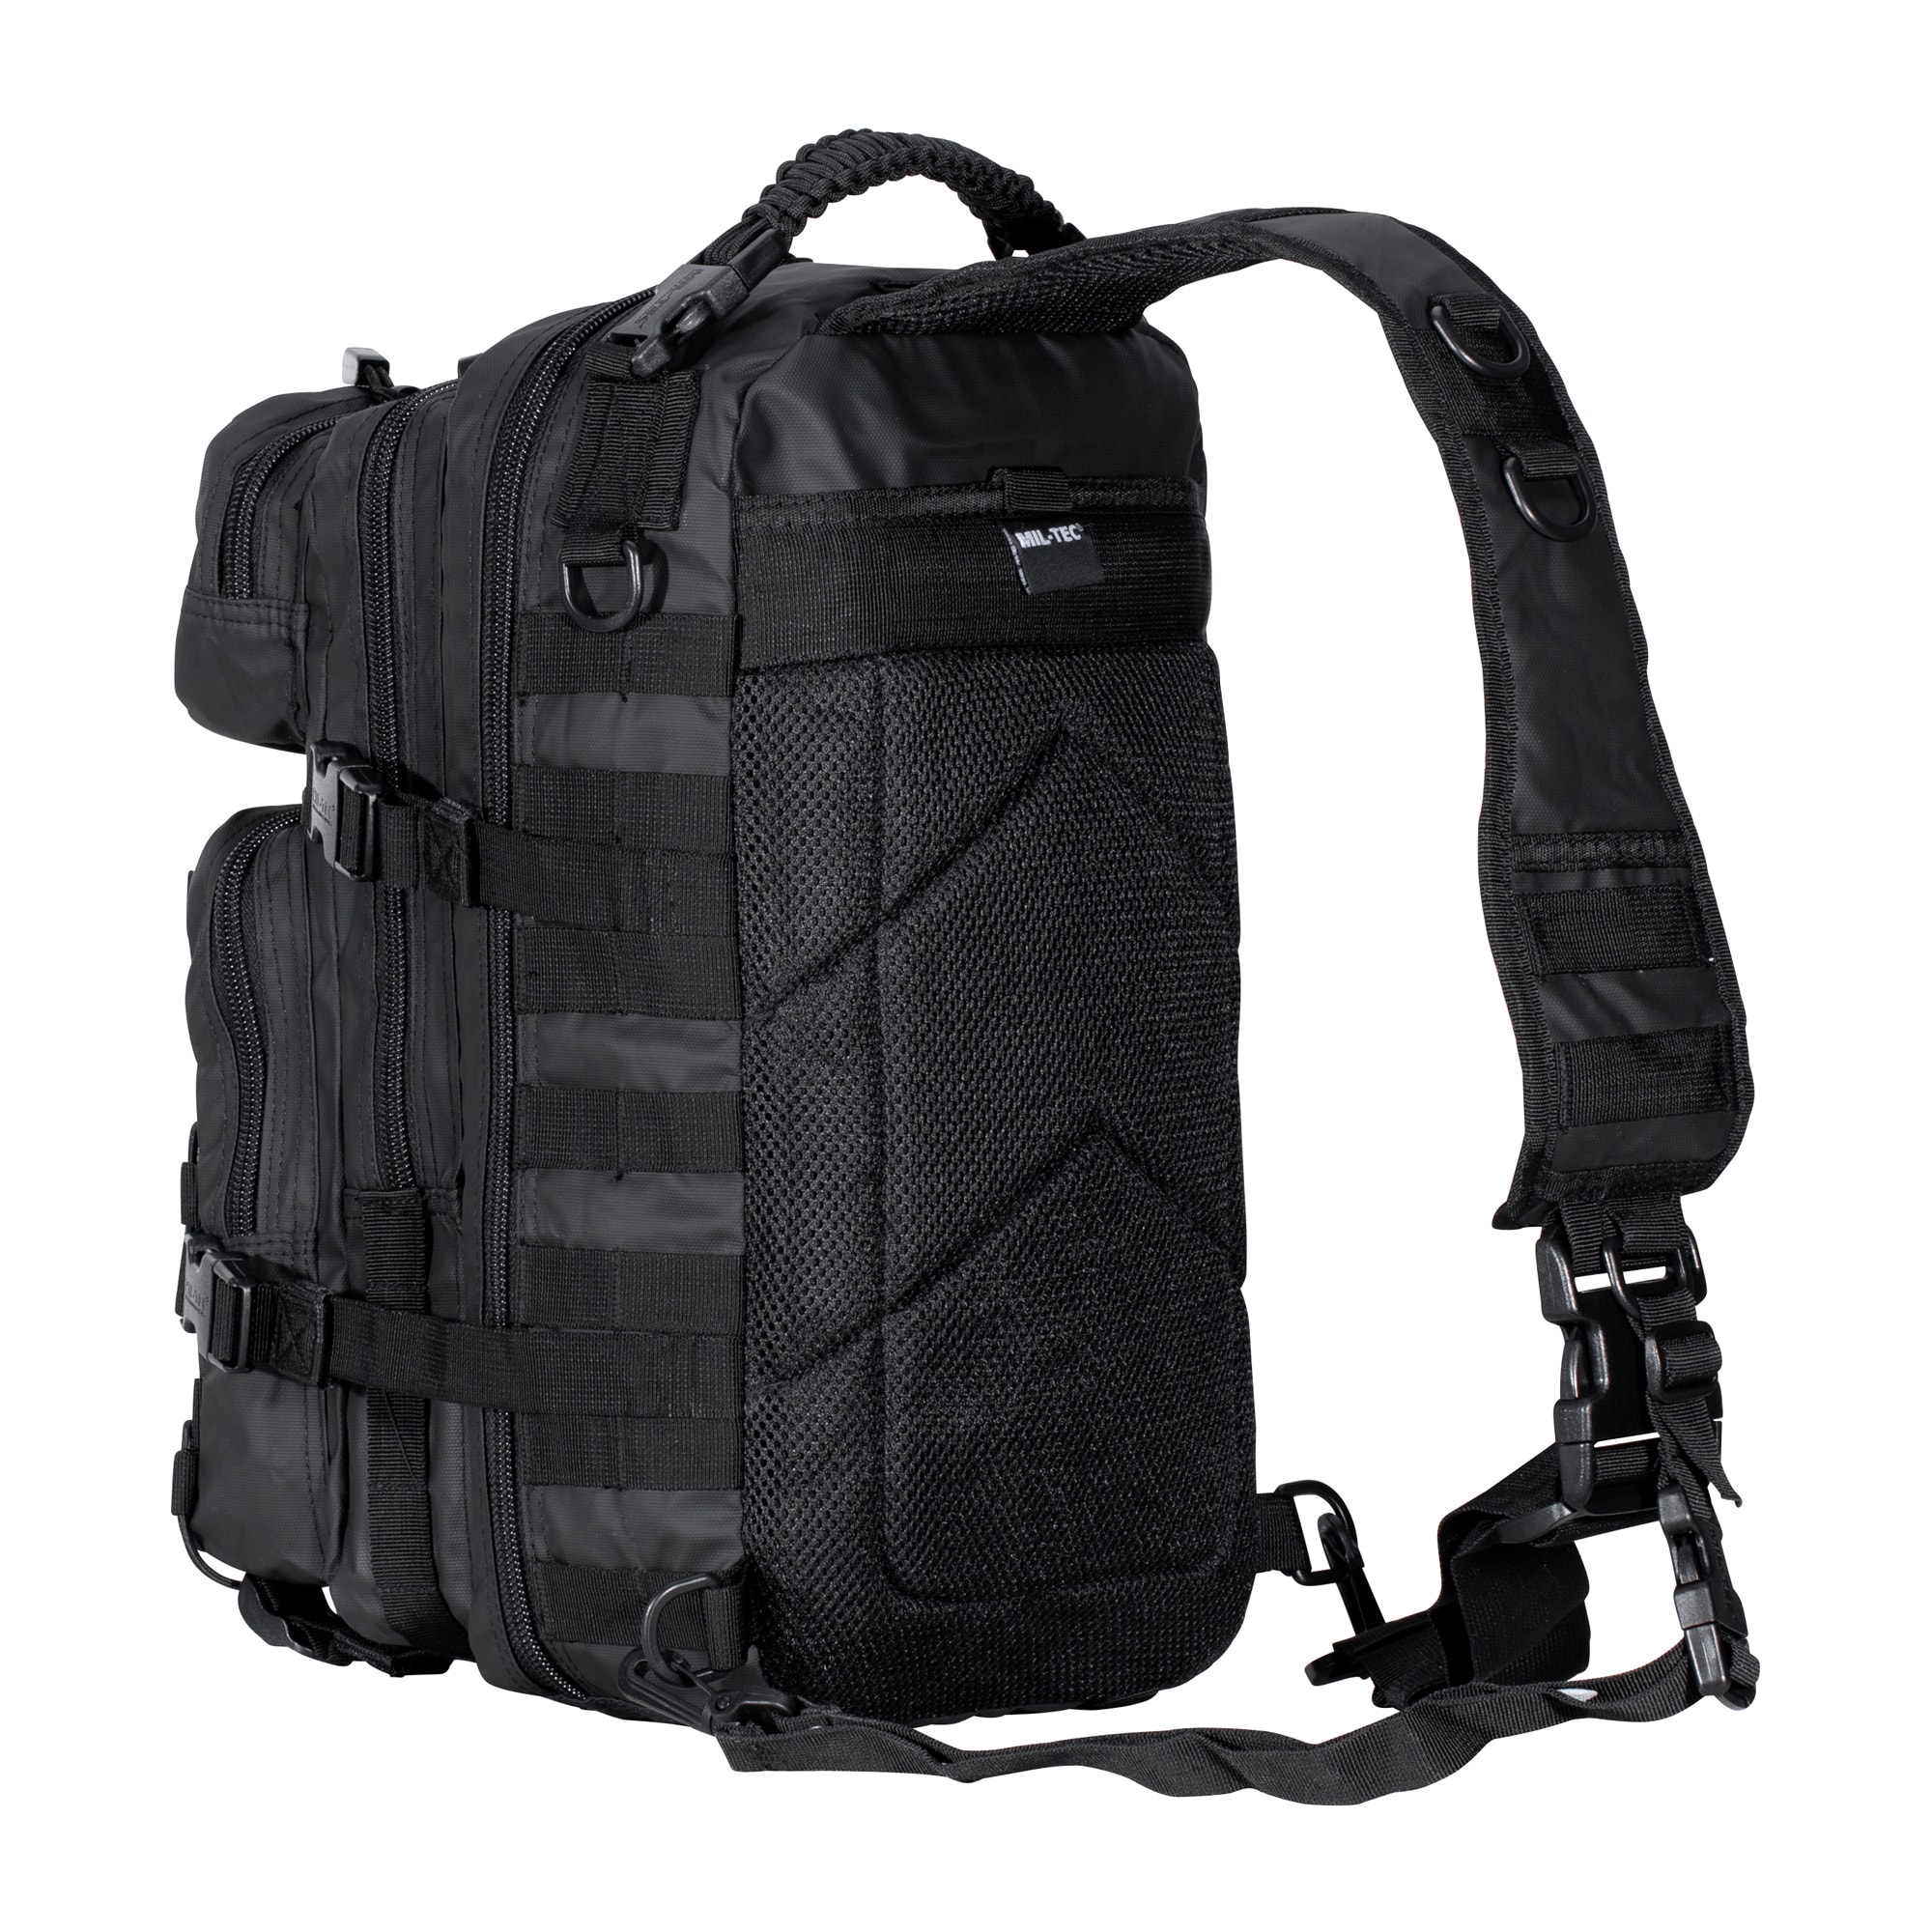  MIL-TEC: Backpacks